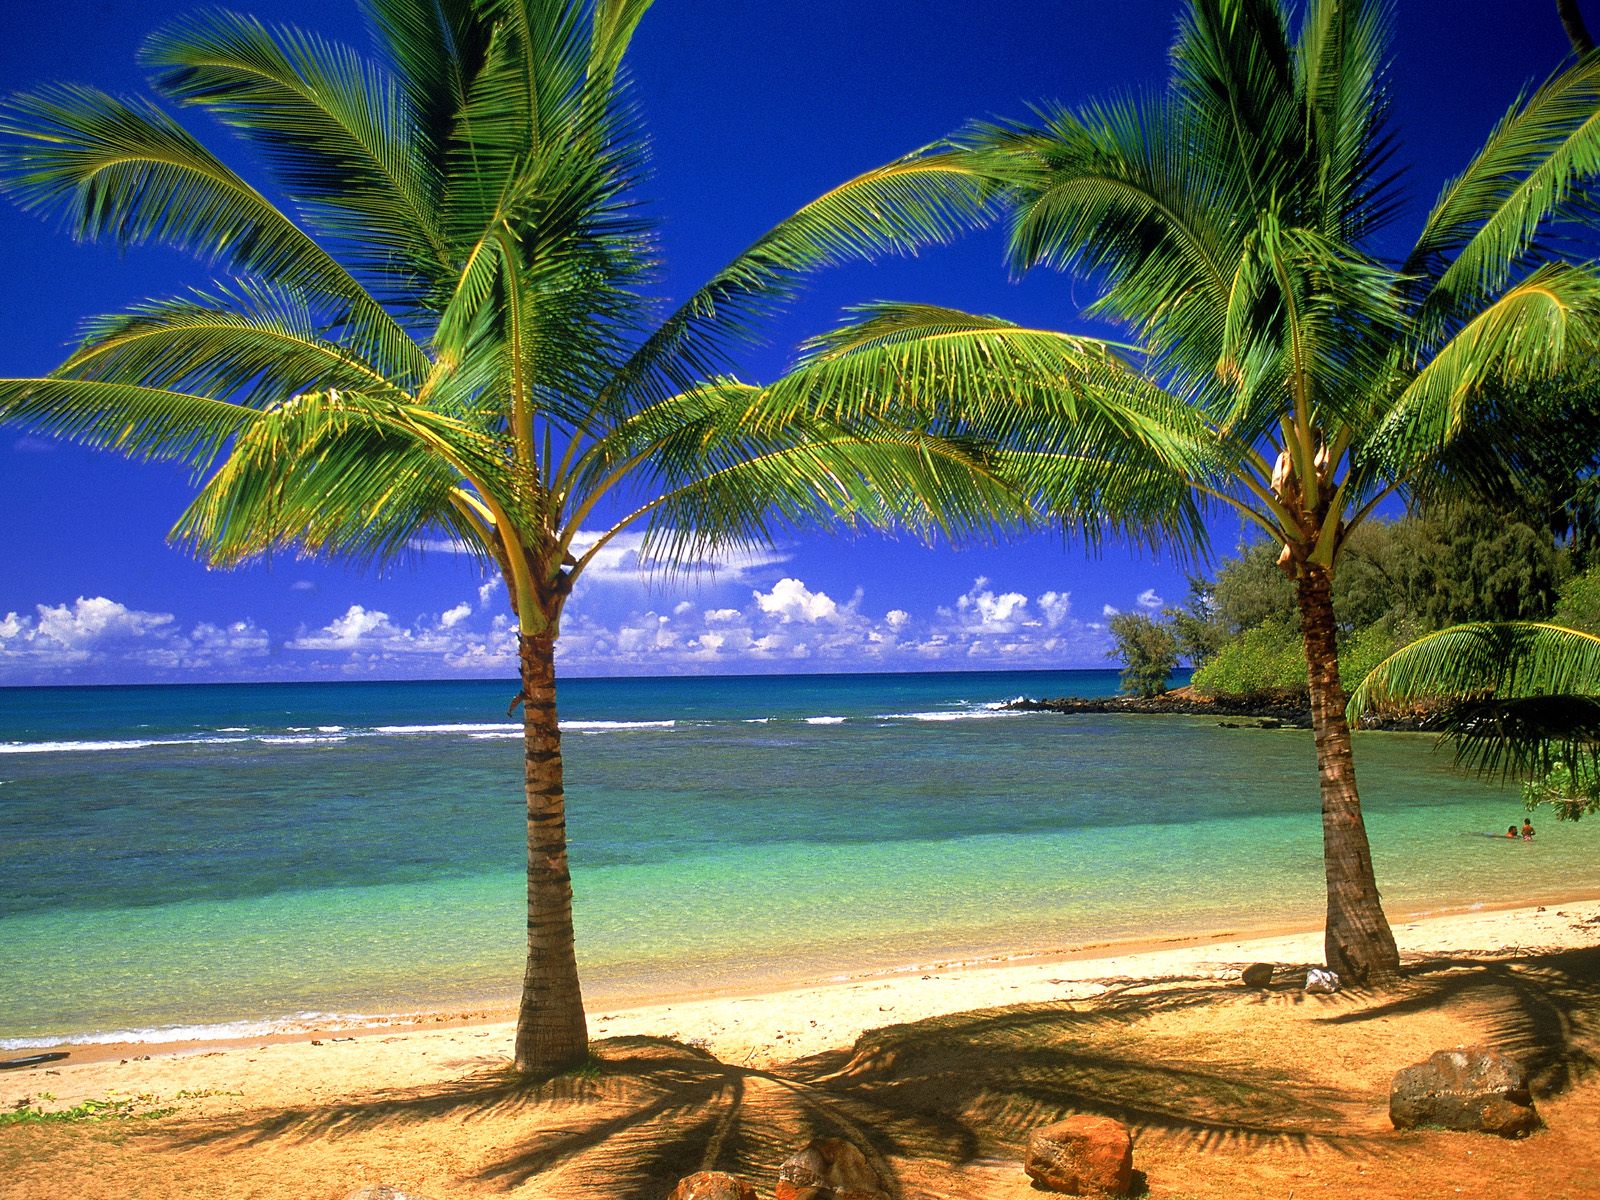 Beaches Islands HD Wallpapers Beach Desktop Backgrounds Images